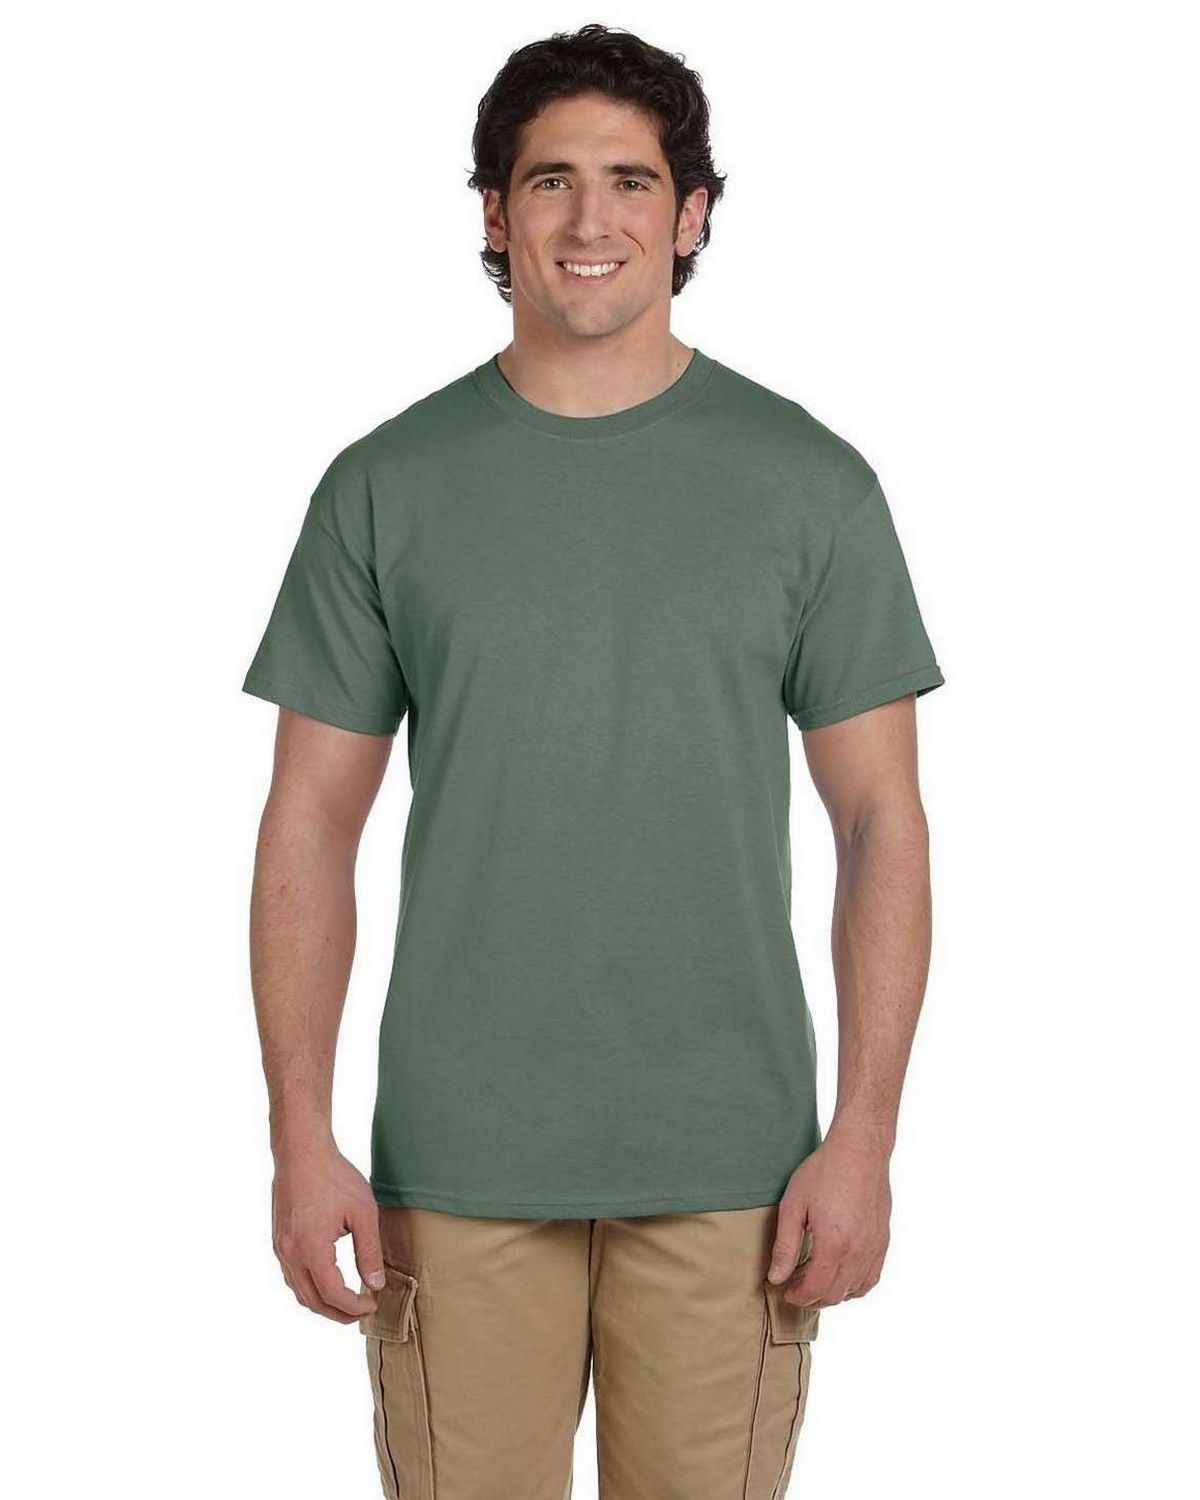 Hanes 5170 50/50 ComfortBlend EcoSmart T Shirt - ApparelnBags.com